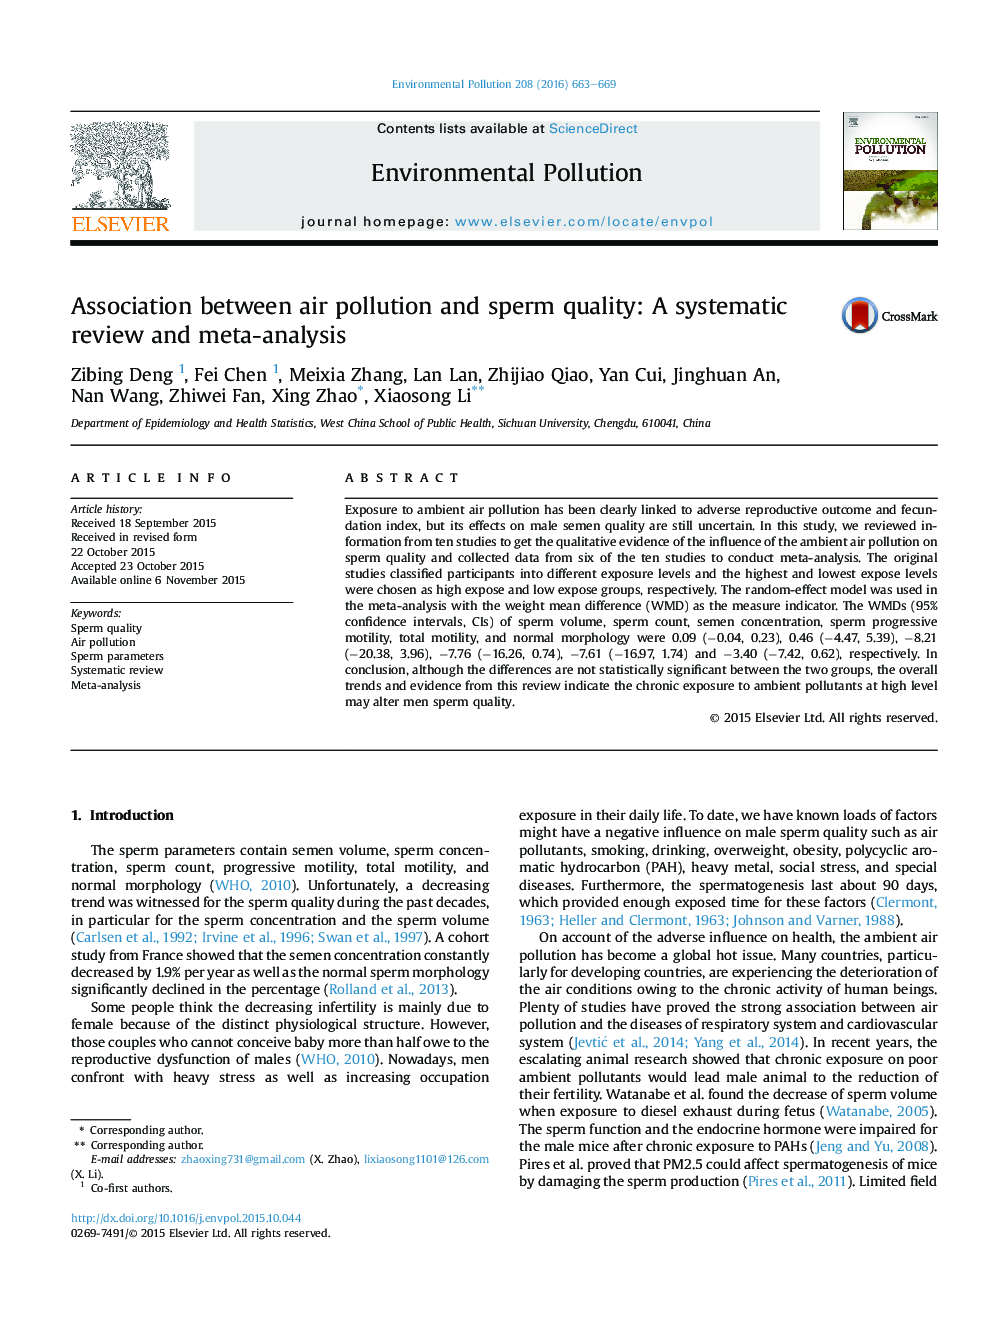 ارتباط بین آلودگی هوا و کیفیت اسپرم: بررسی منظم و متاآنالیز 